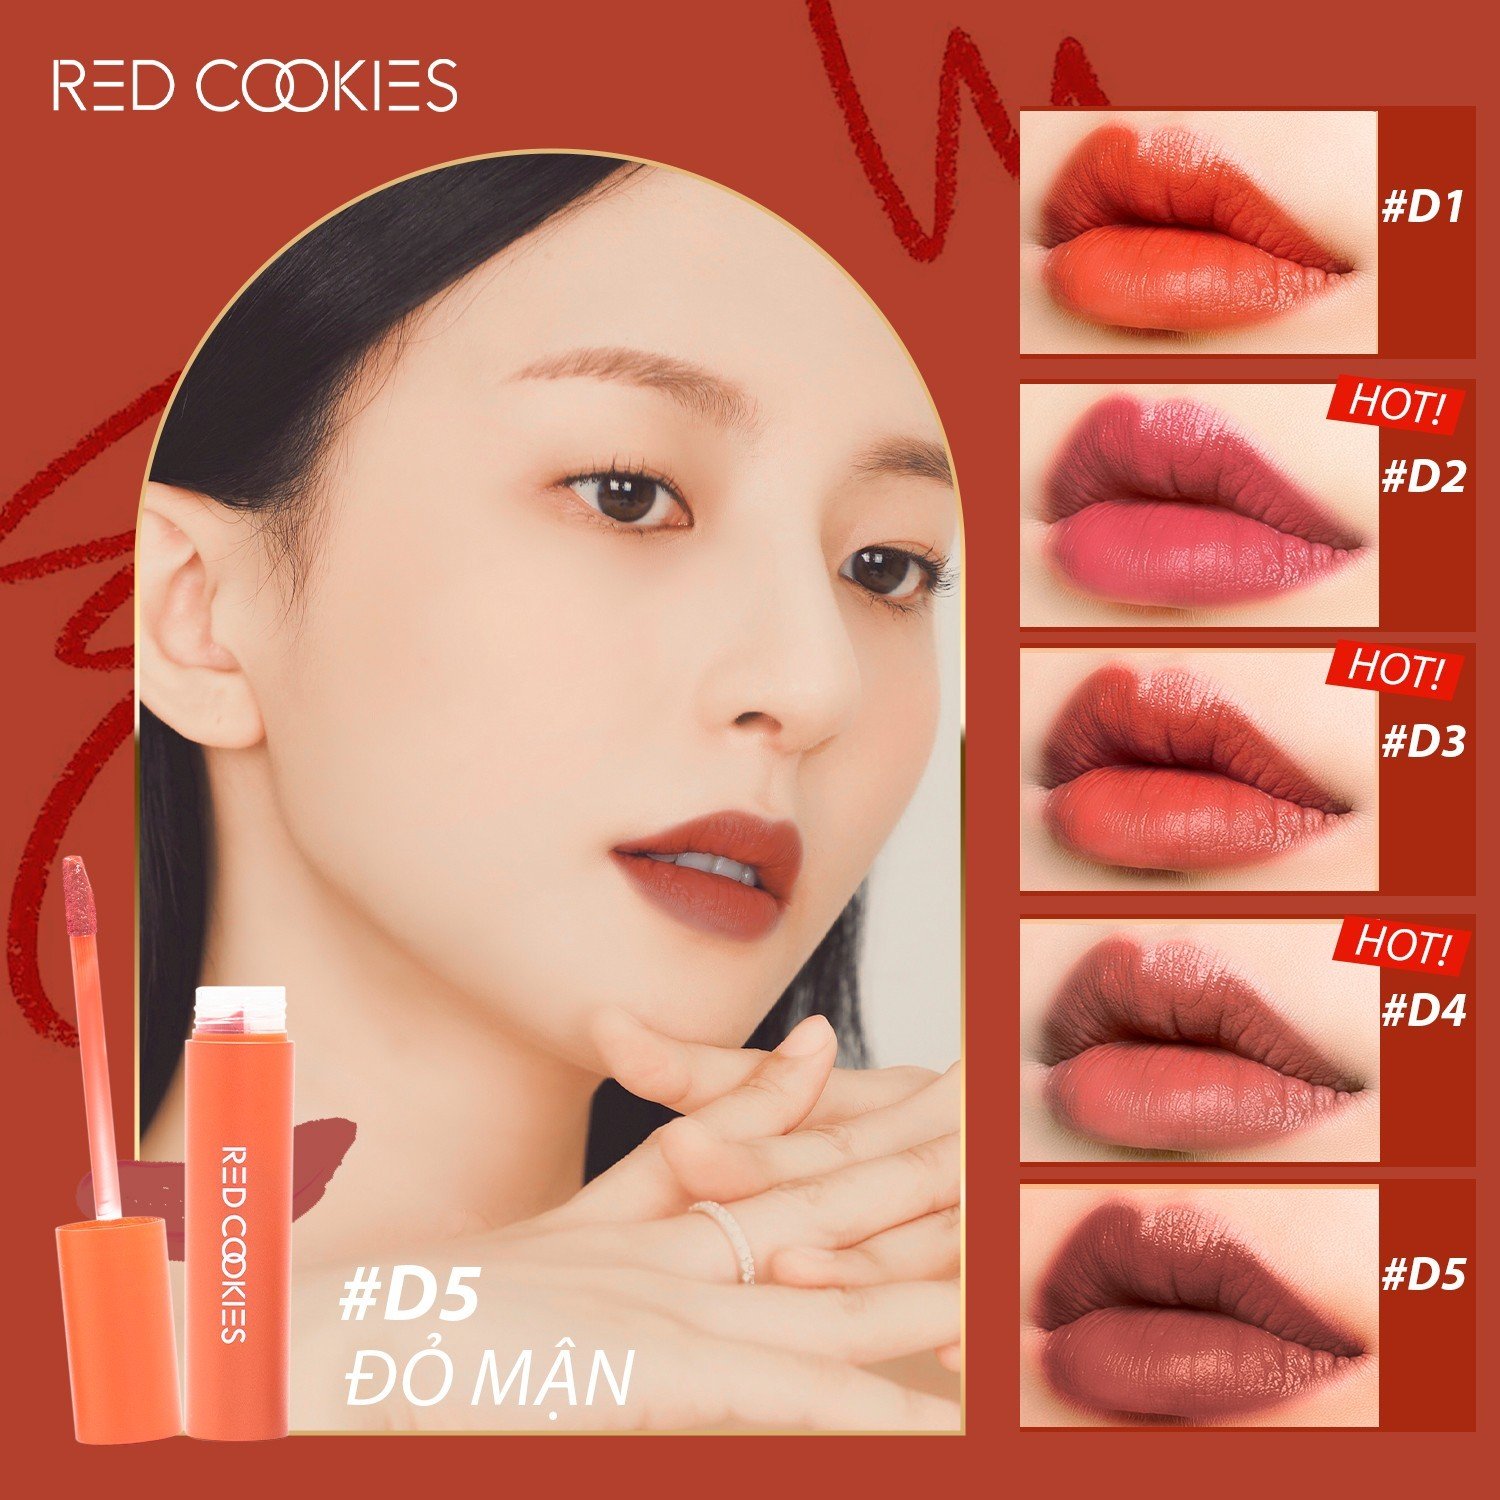 Son Lì Red Cookies Water Dew Velvet Tint Hàn Quốc Màu D5 - Đỏ Mận